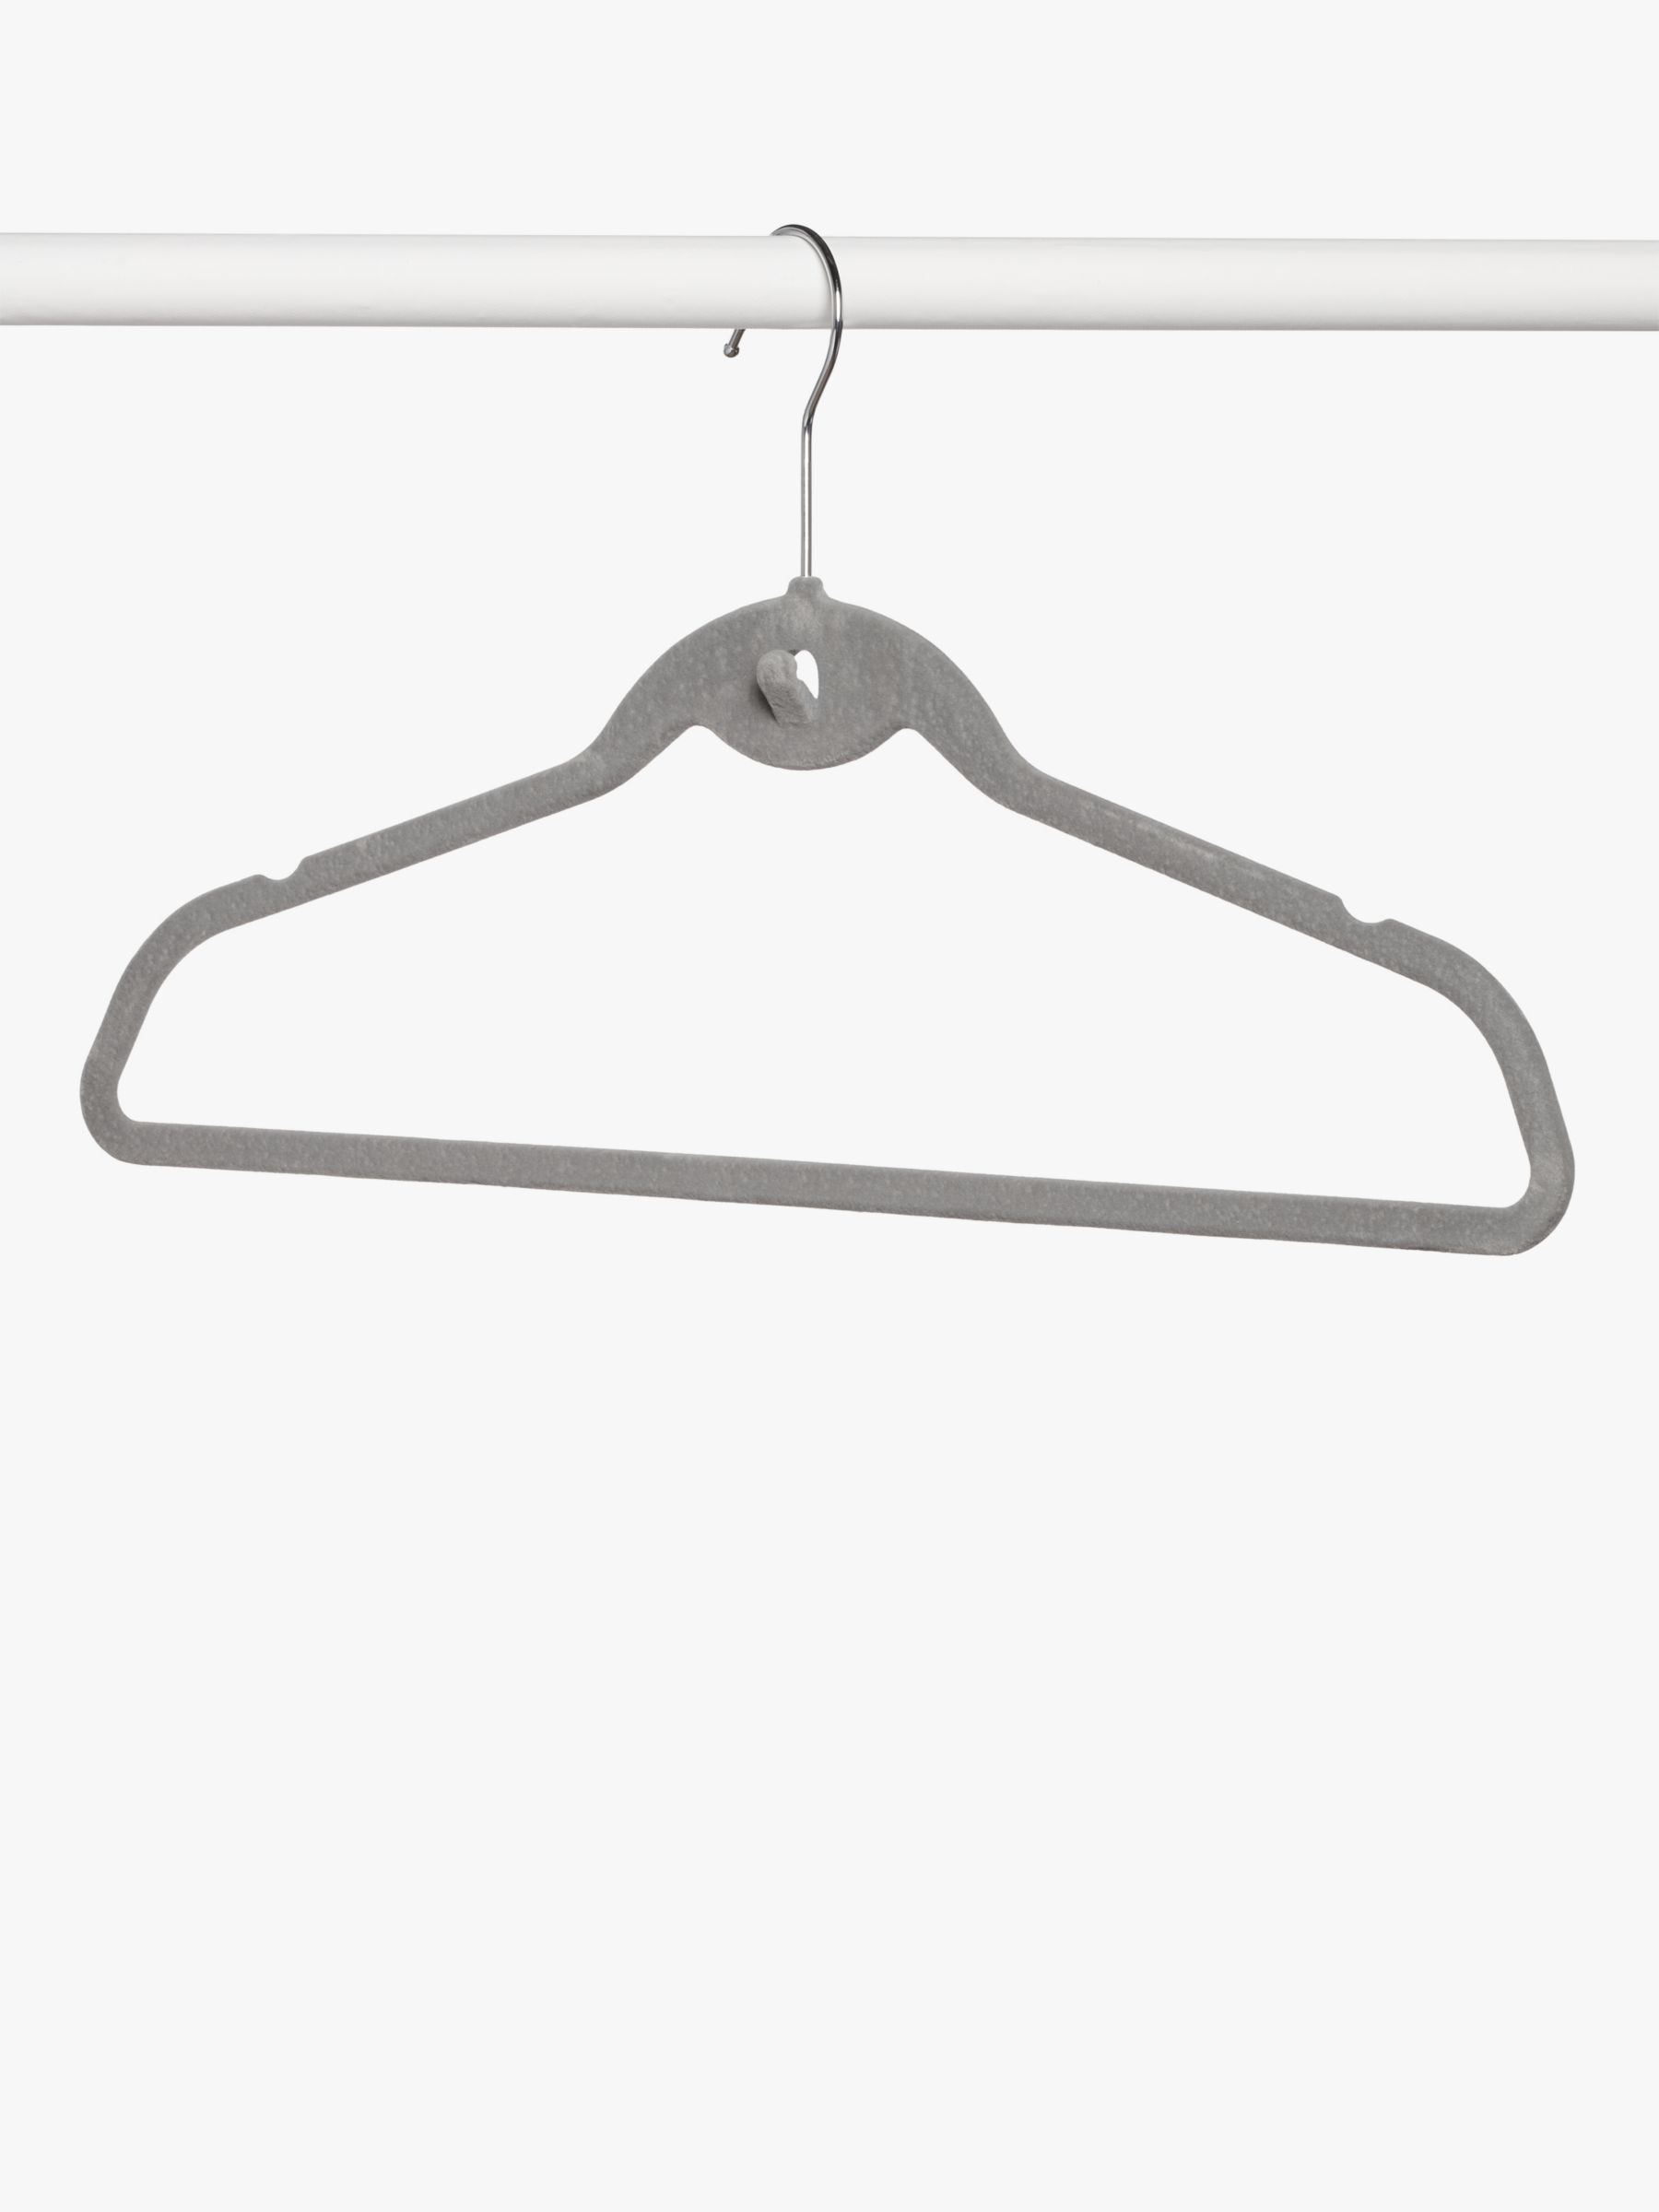 20 Pcs Anti-slip Flocking Clothes Rack Hanger Hooks Holders Mini Flocked Hanger Connector Hooks Grey 